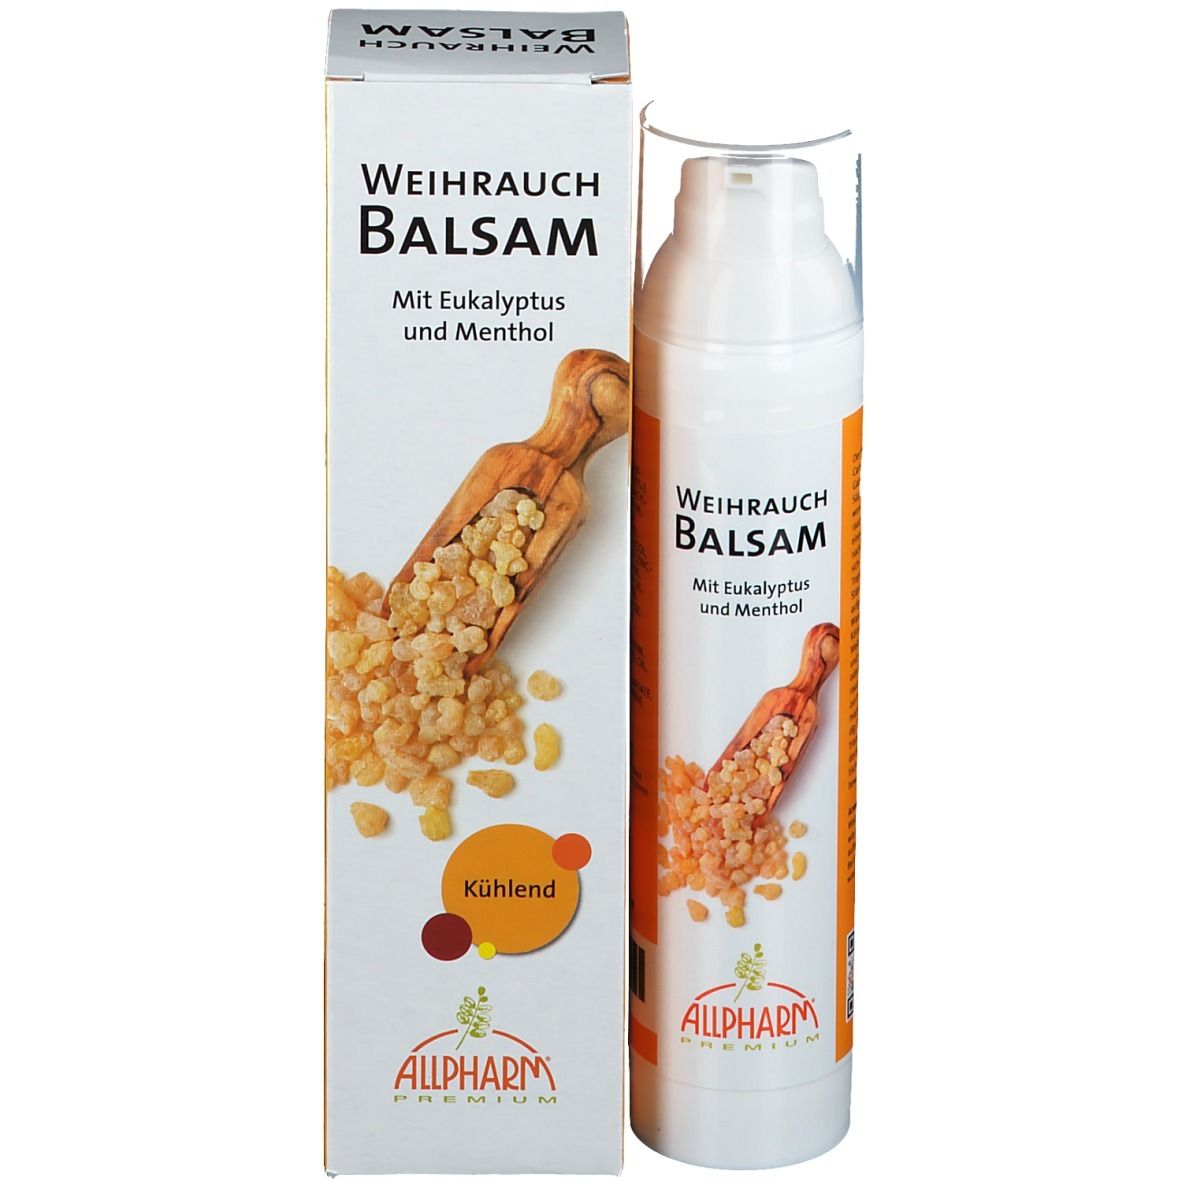 ALLPHARM® Weihrauch-Balsam